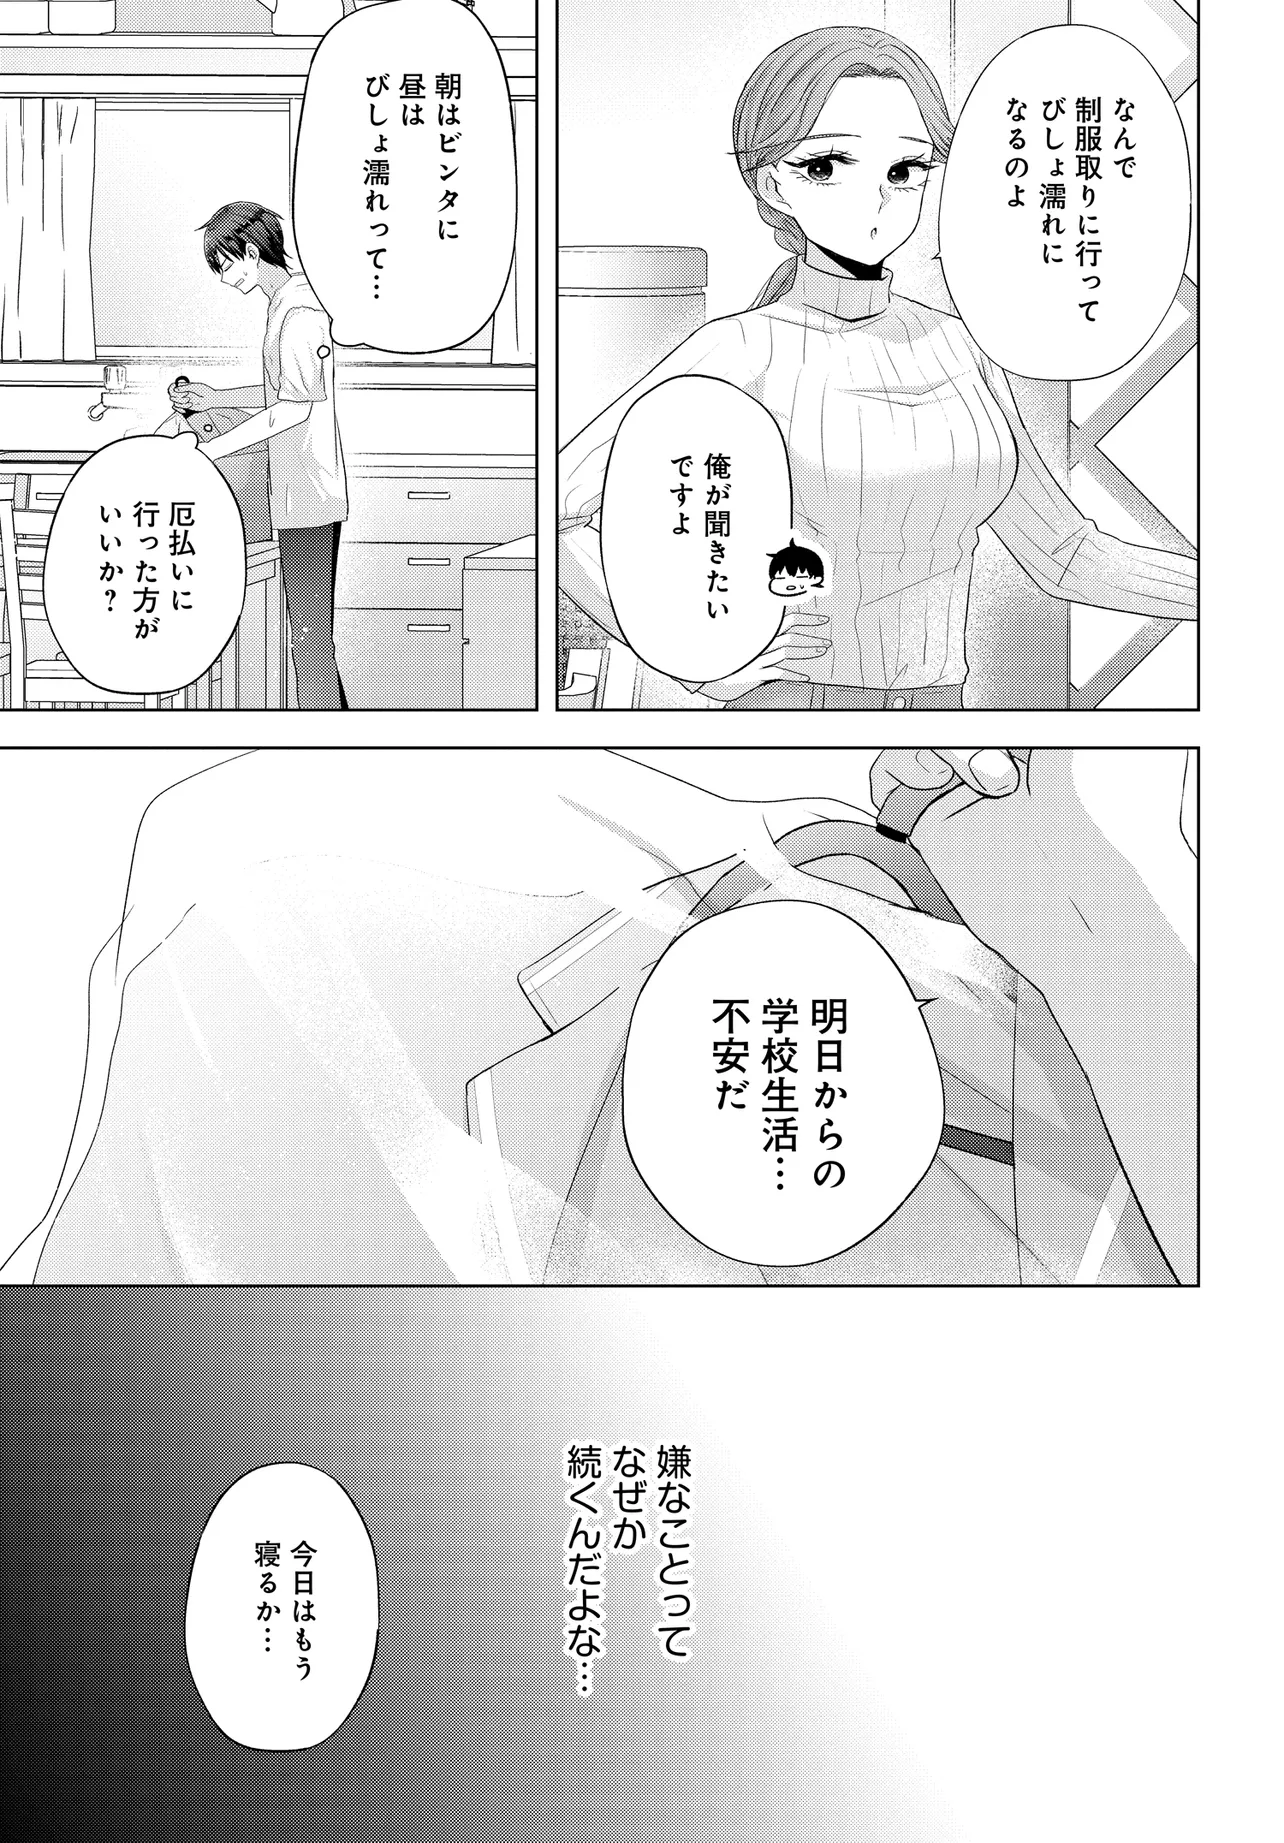 Suufun Go no Mirai ga Wakaru you ni Natta kedo, Onnagokoro wa Wakaranai. - Chapter 1 - Page 39